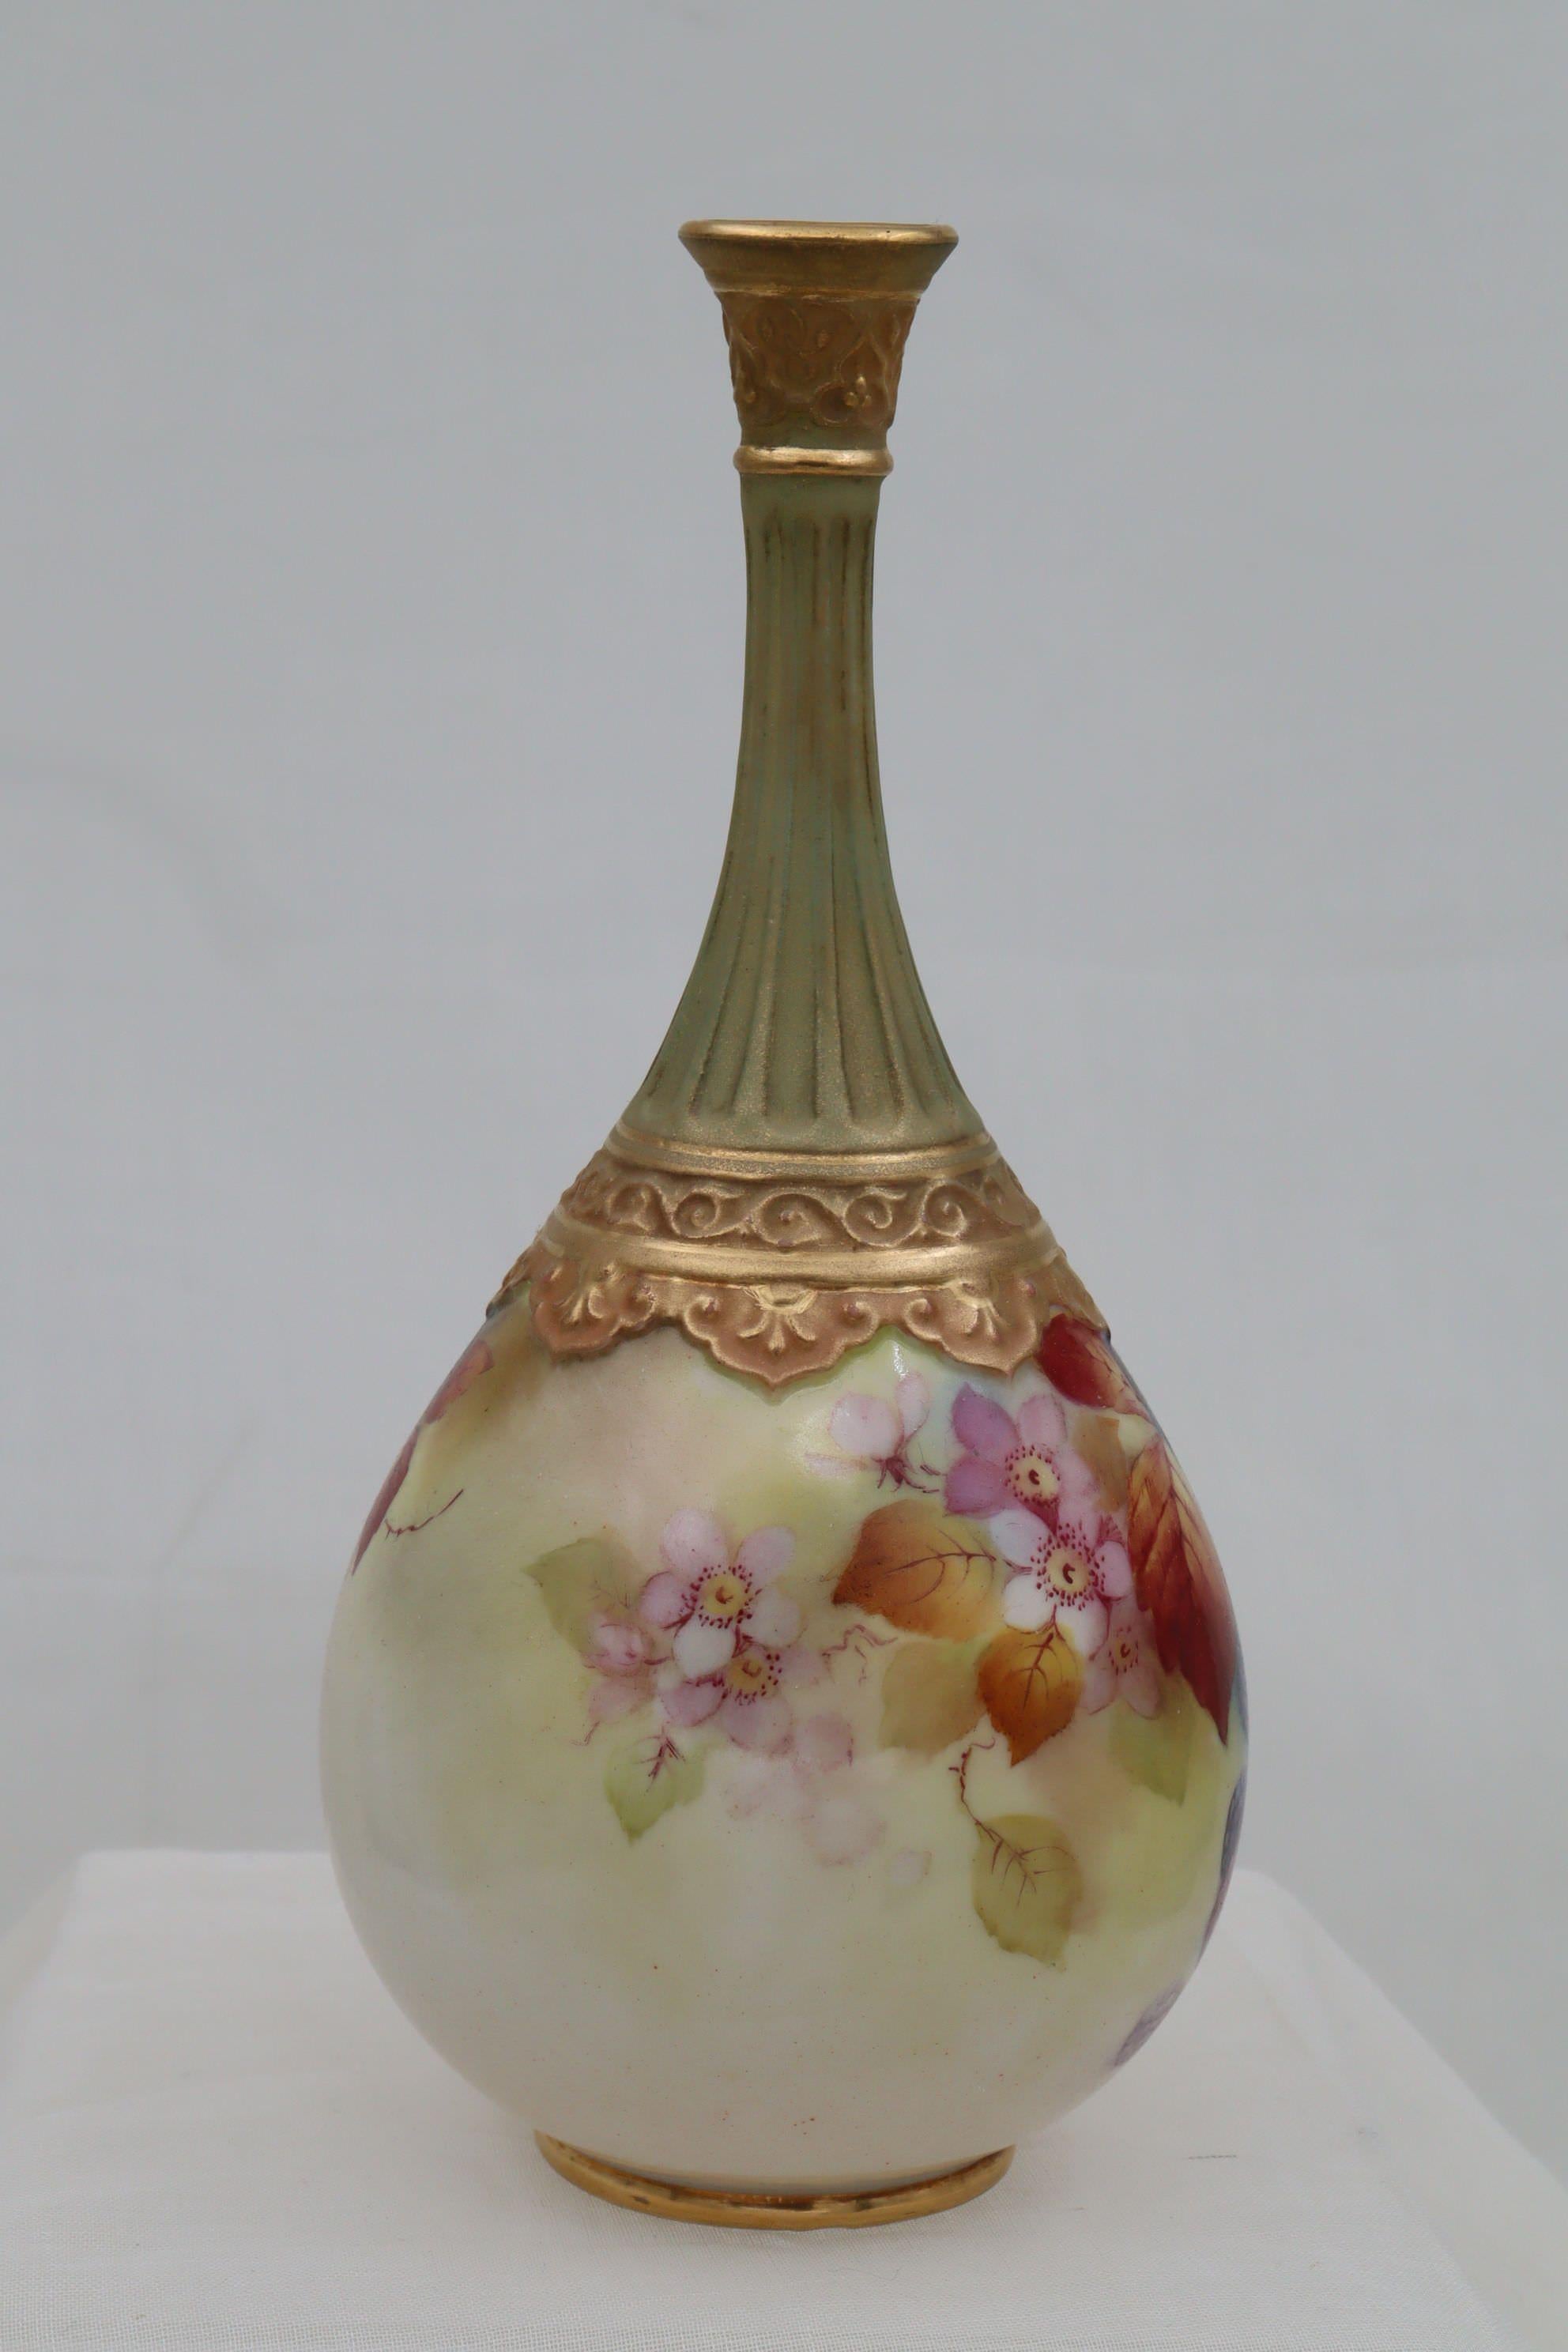 Diese birnenförmige Vase von Royal Worcester mit dekorativen Goldbeschlägen wurde von Kitty Blake mit ihrem charakteristischen Motiv aus Brombeeren und herbstlichen Blättern handbemalt.  Kitty Blake arbeitete 48 Jahre lang, von 1905 bis 1953, in der